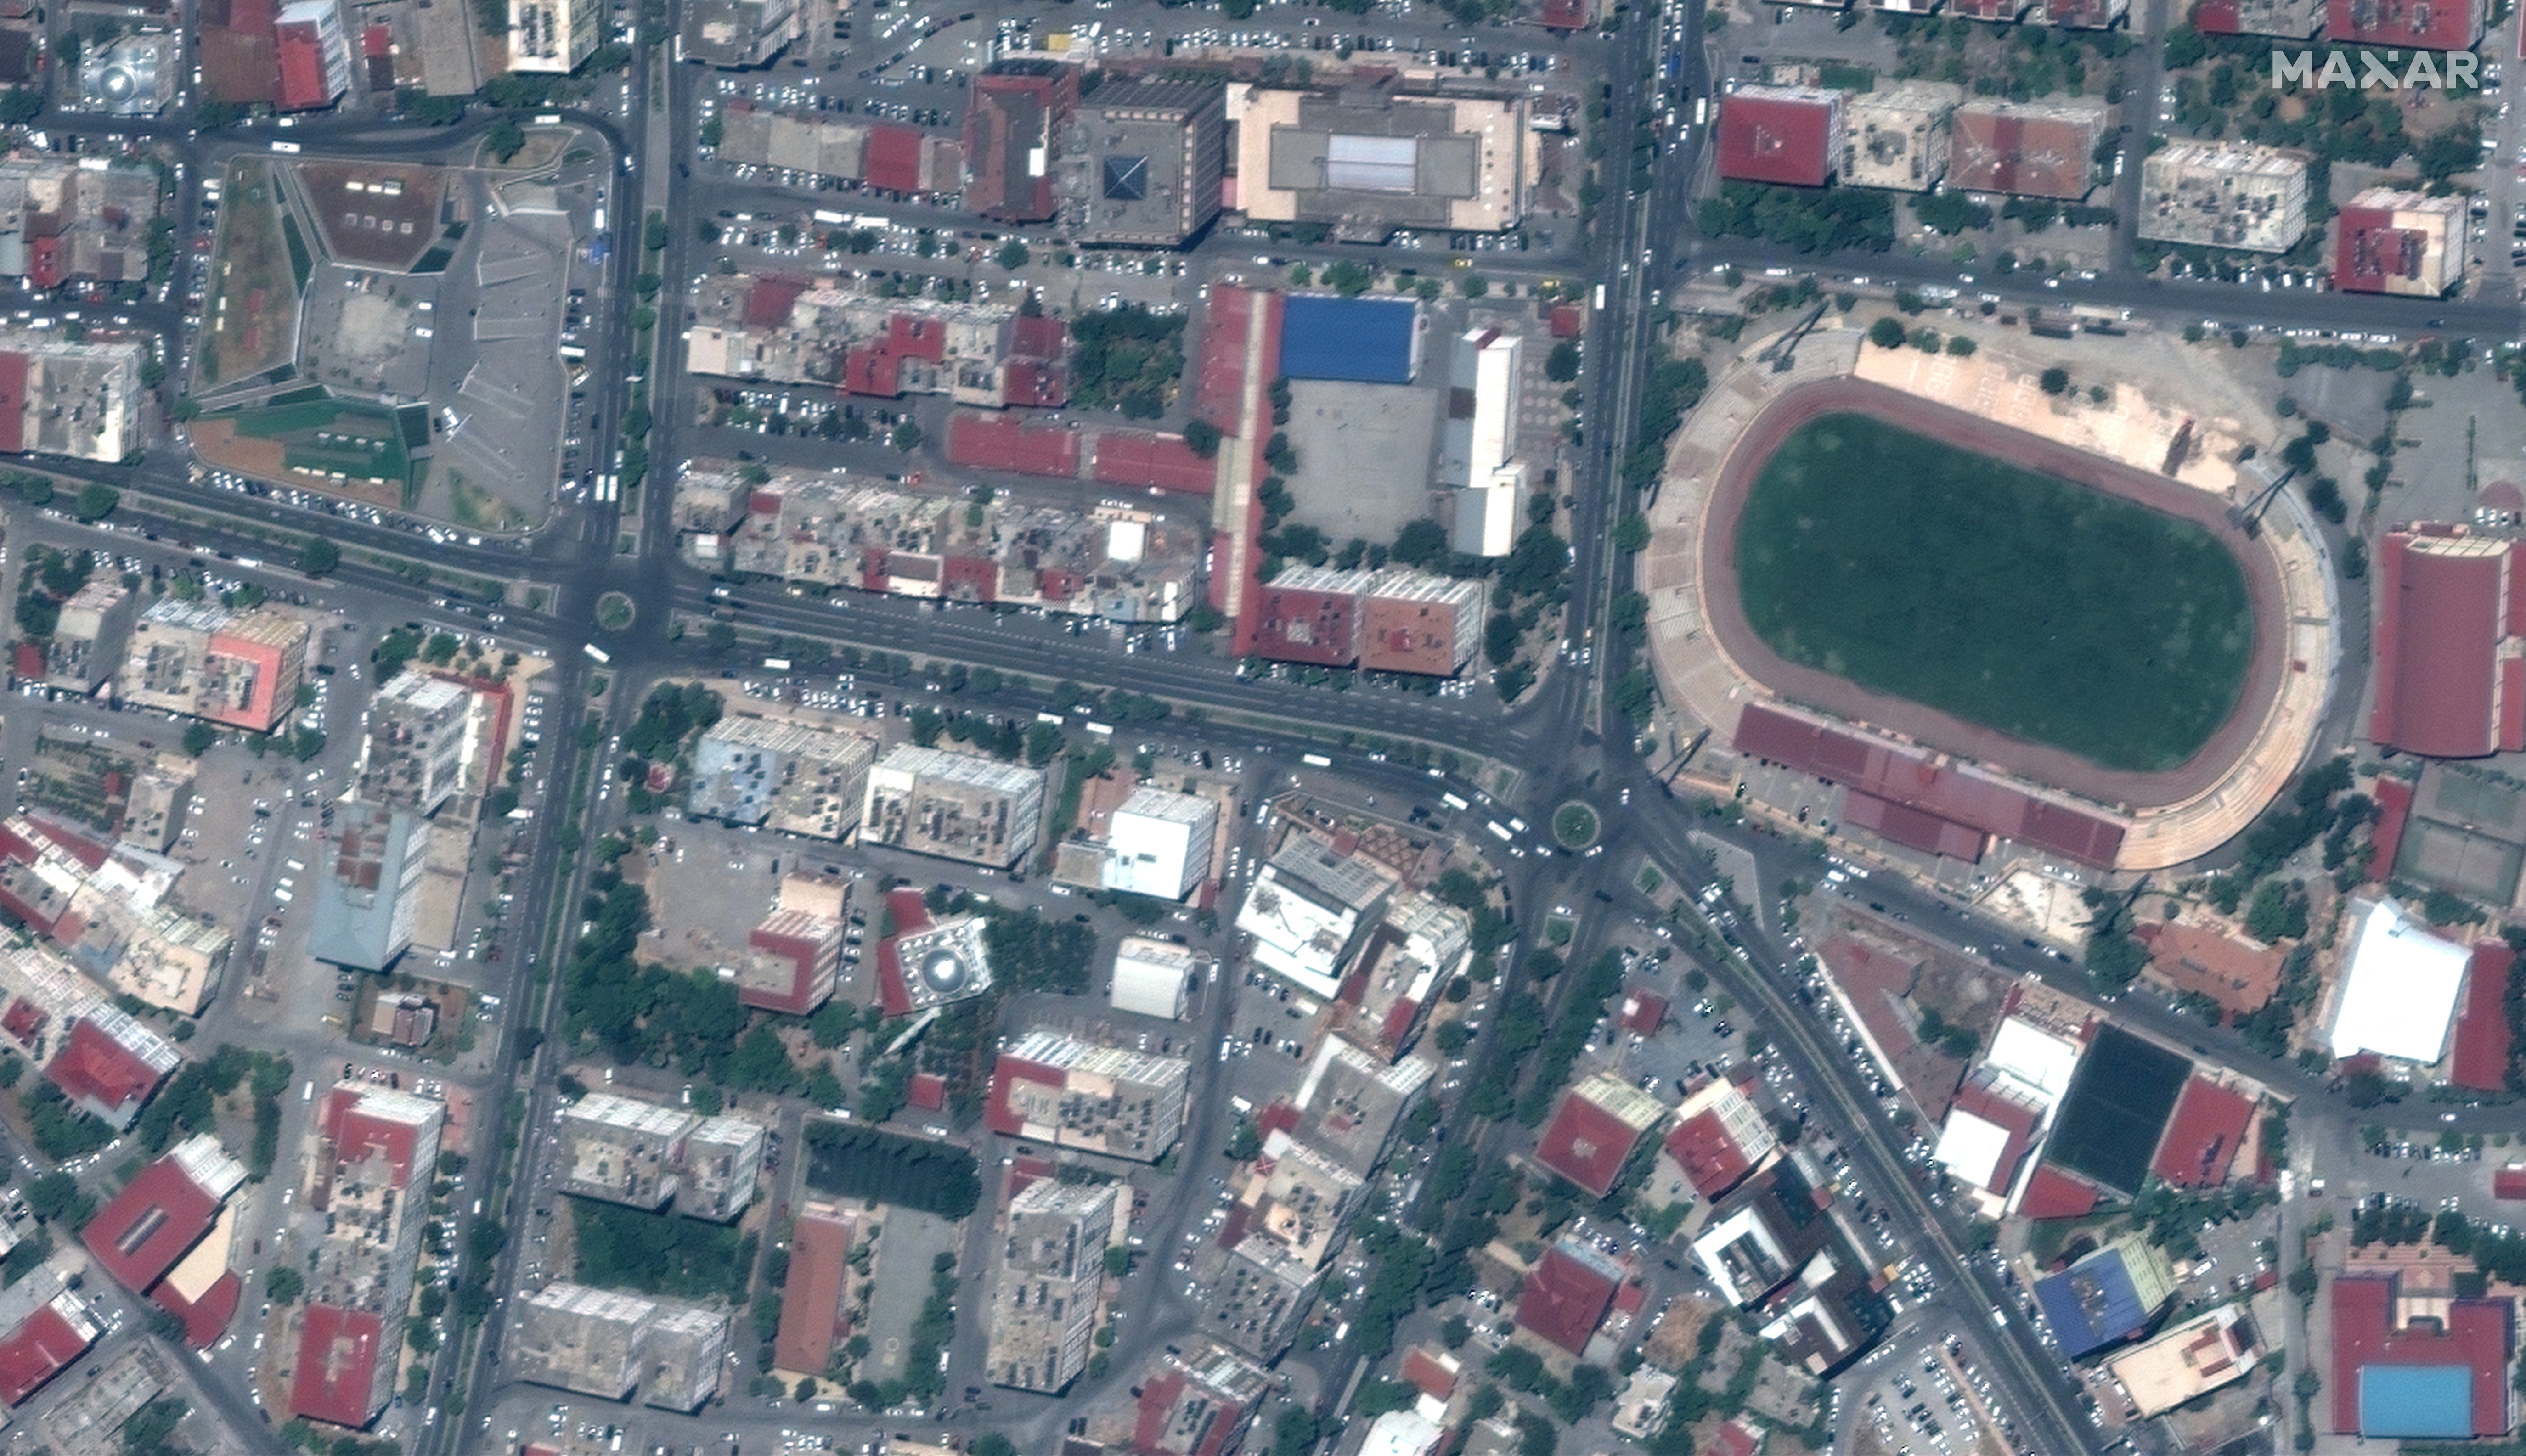 Una imagen satelital muestra edificios y un estadio antes de un terremoto en el centro de Kahramanmaras, Maxar Technologies/Folleto a través de REUTERS 